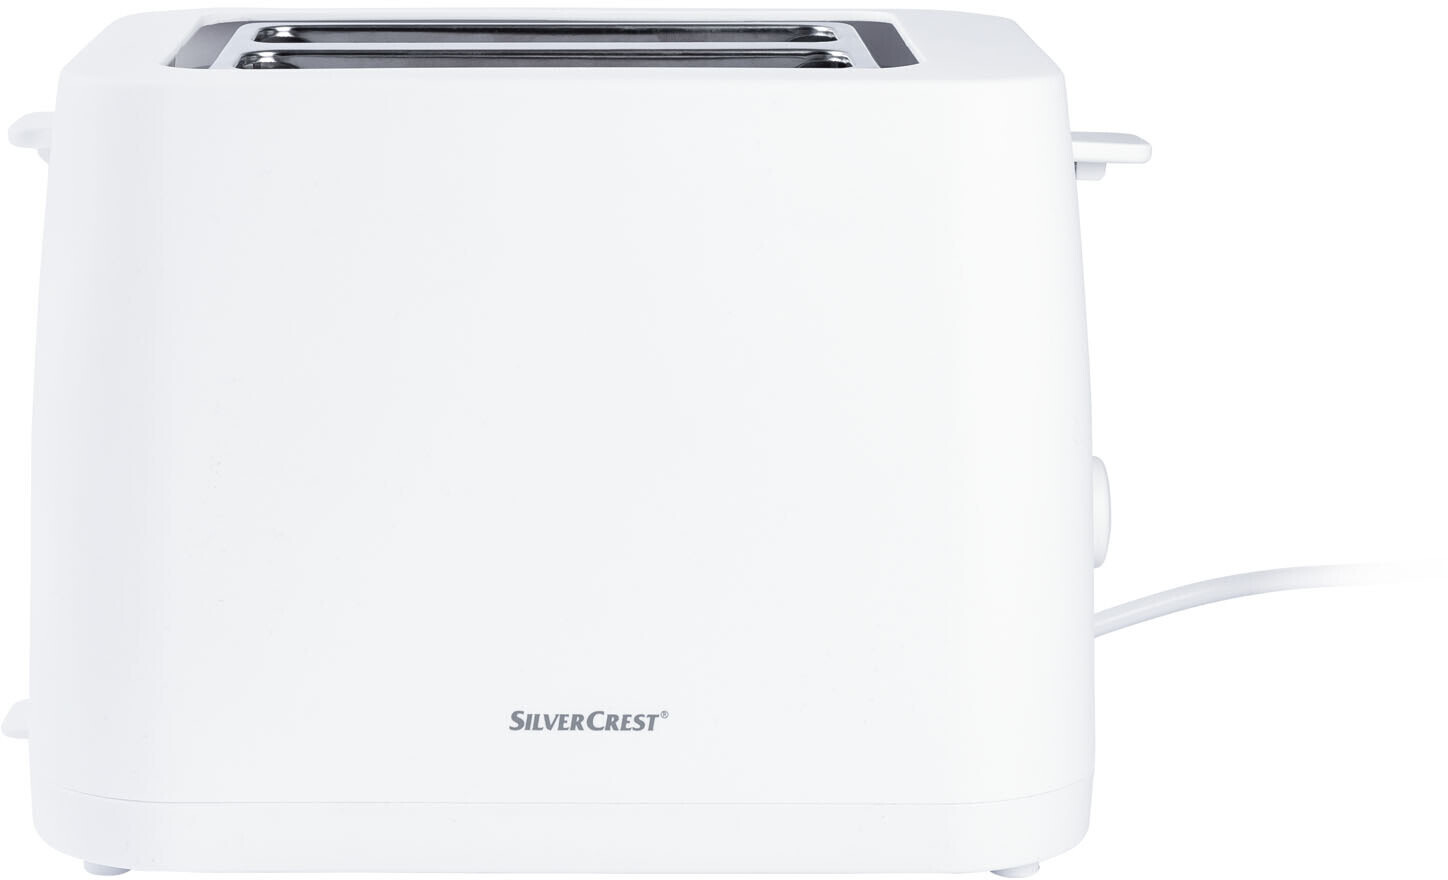 Silvercrest Doppelschlitz-Toaster ab 19,90 bei Preisvergleich | €